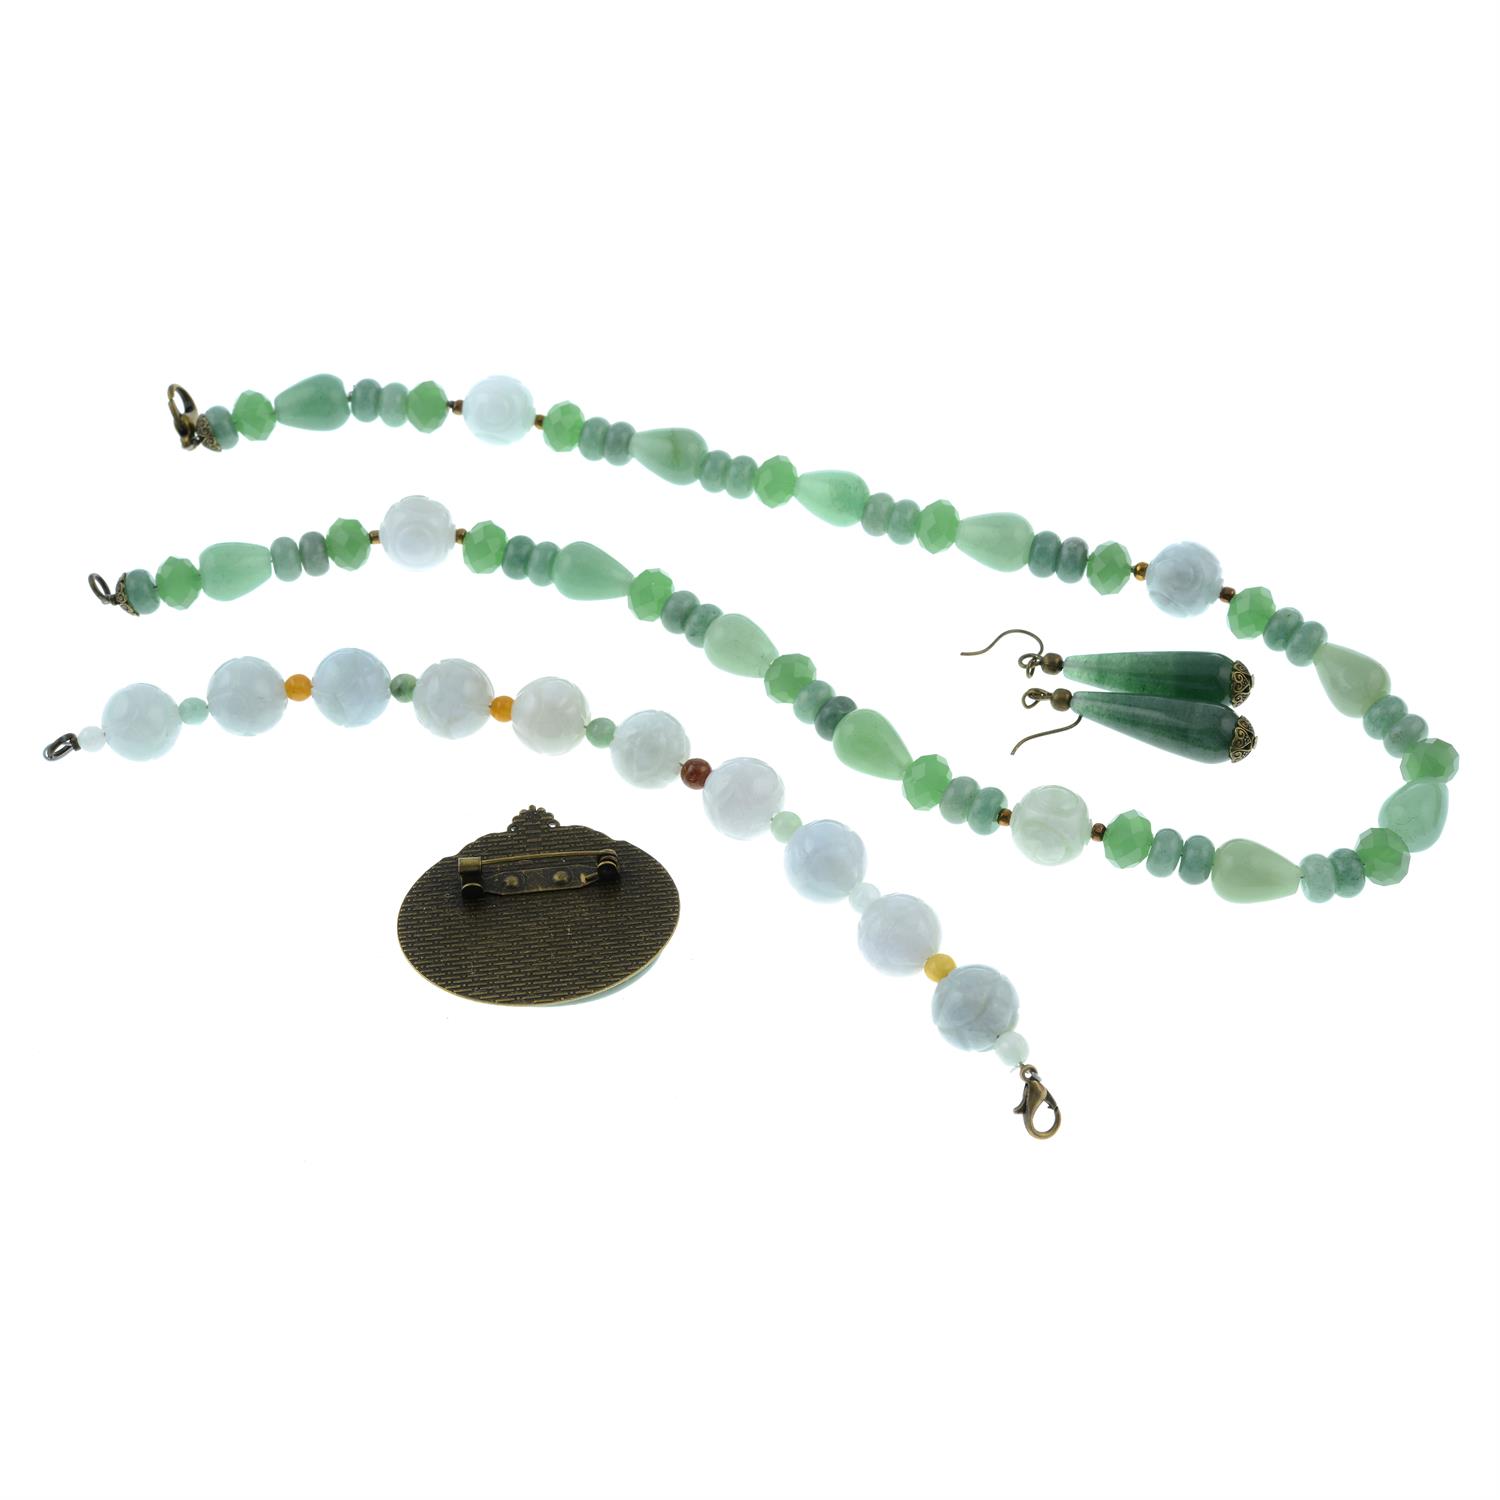 Four pieces of aventruine quartz and vari-hue jade jewellery. - Image 2 of 2